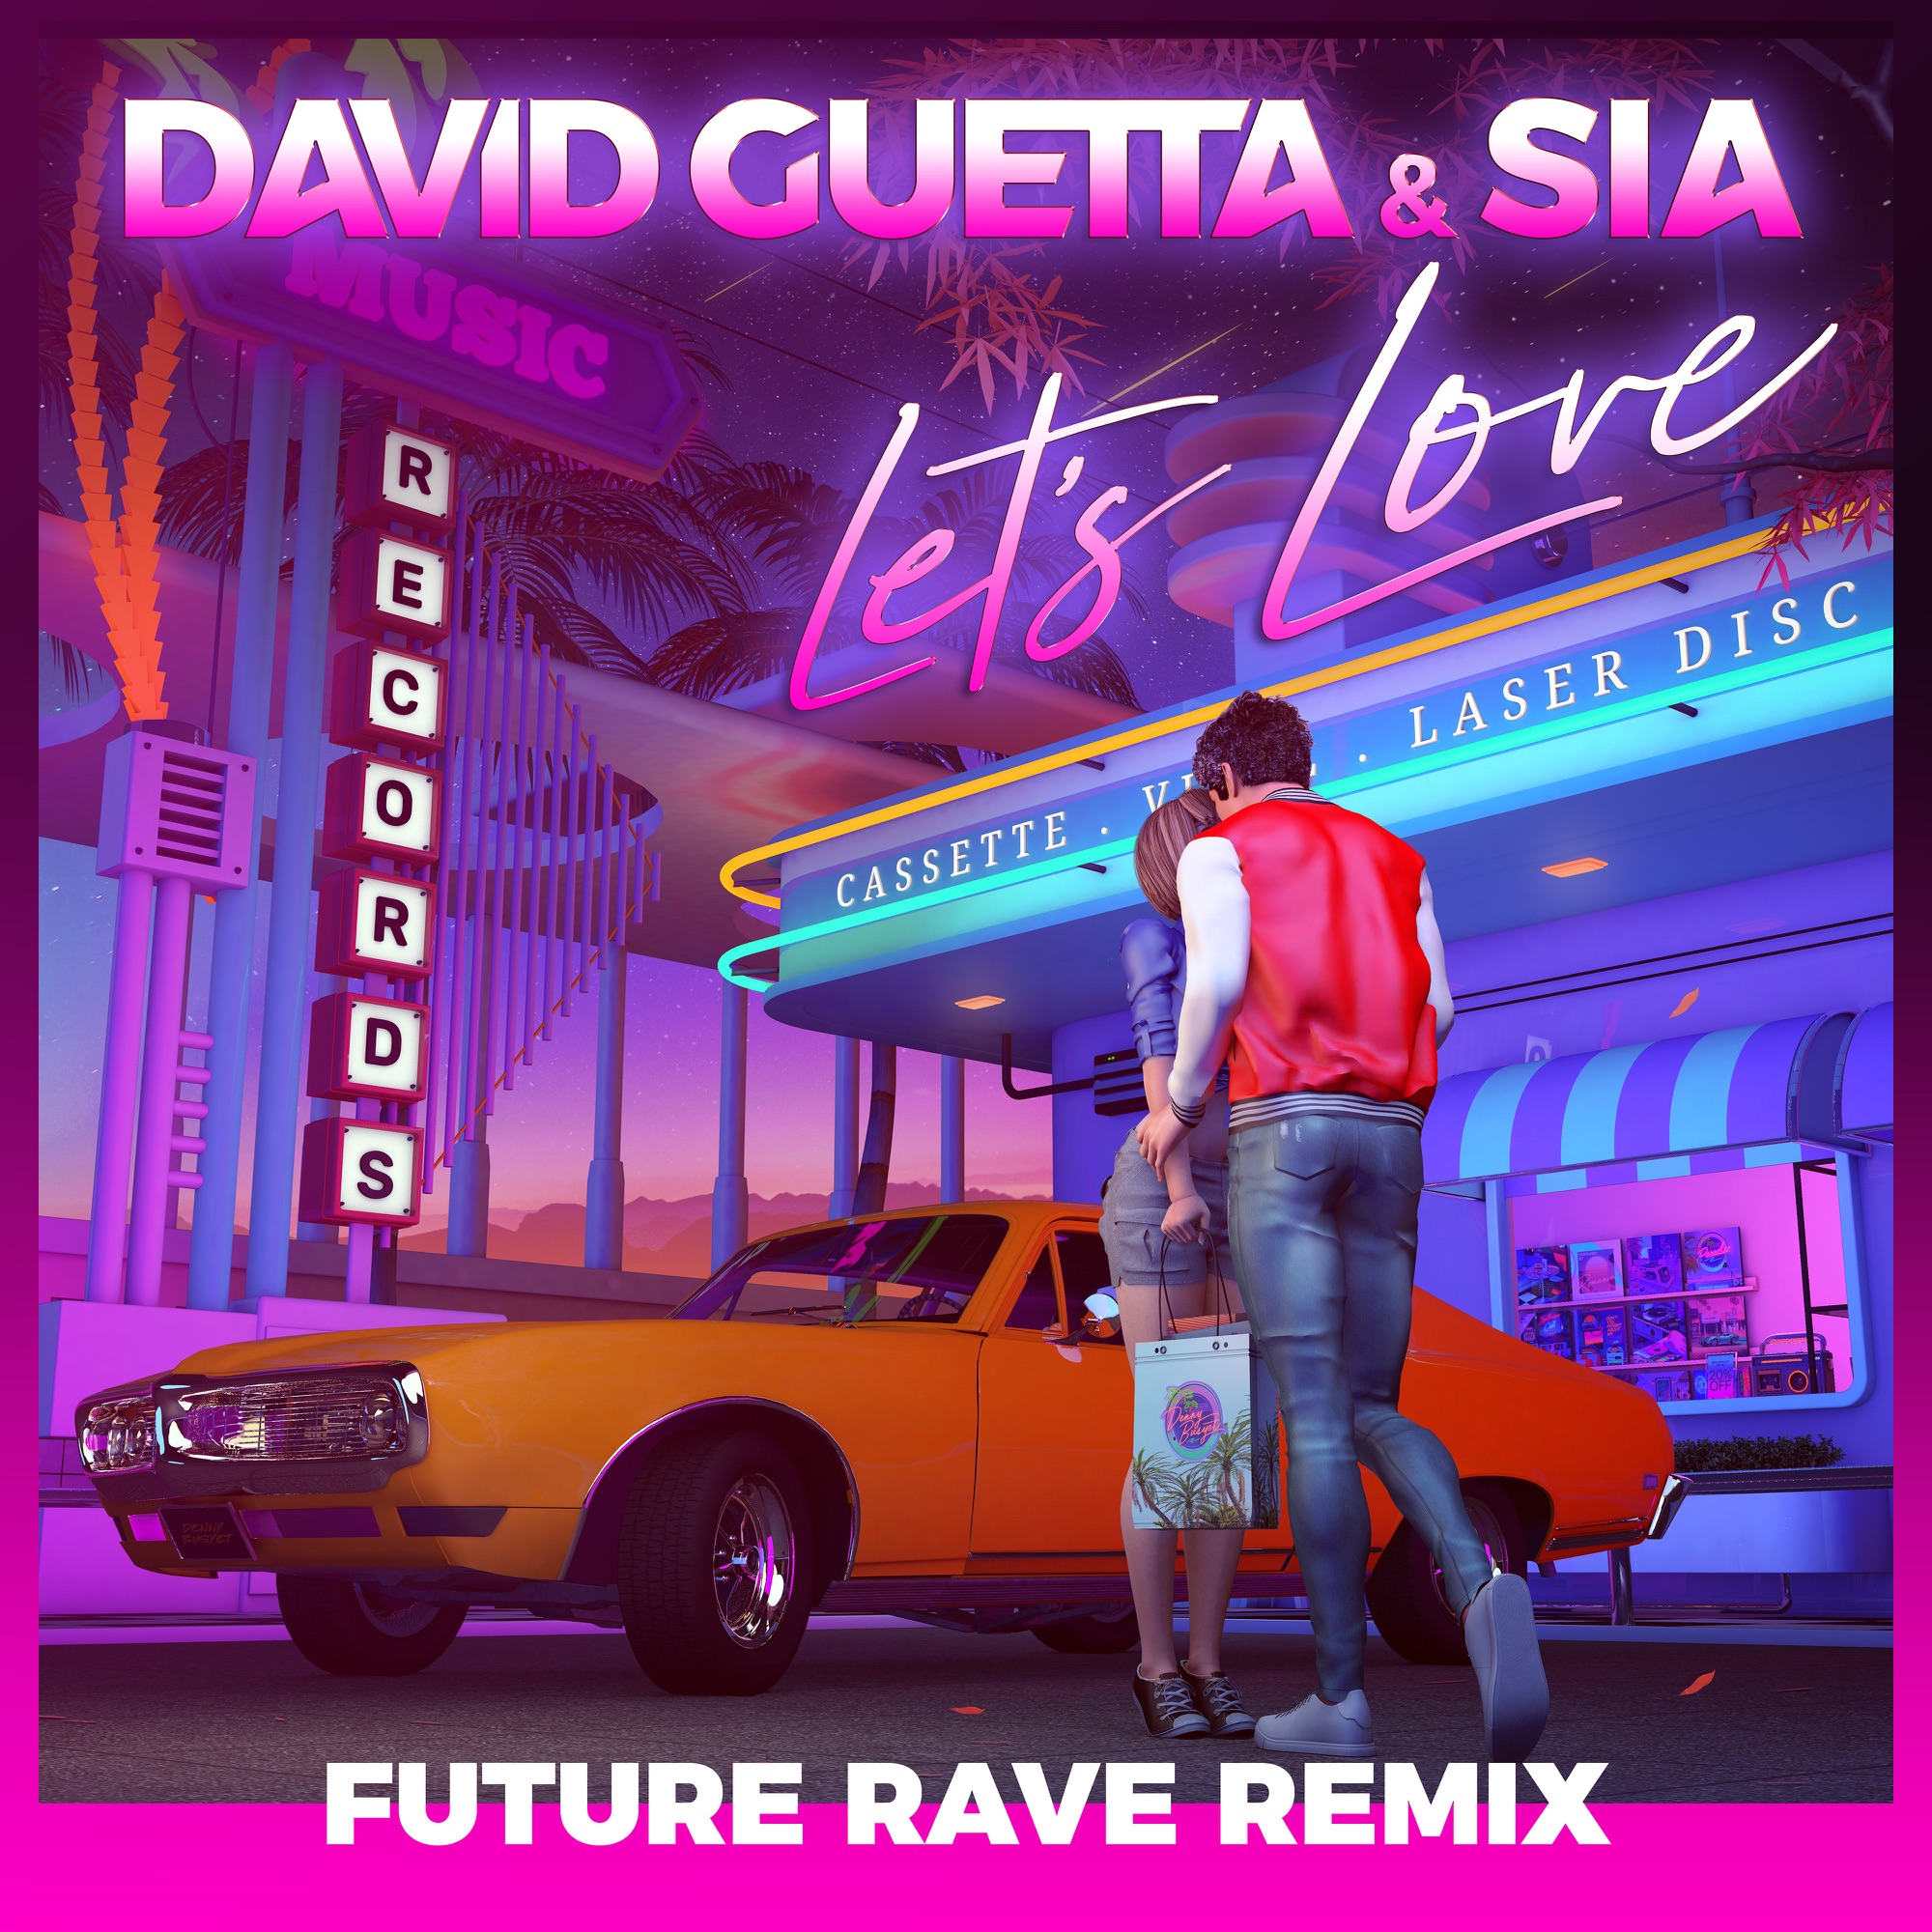 David Guetta & Sia - Let's Love (Future Rave Remix) - Single